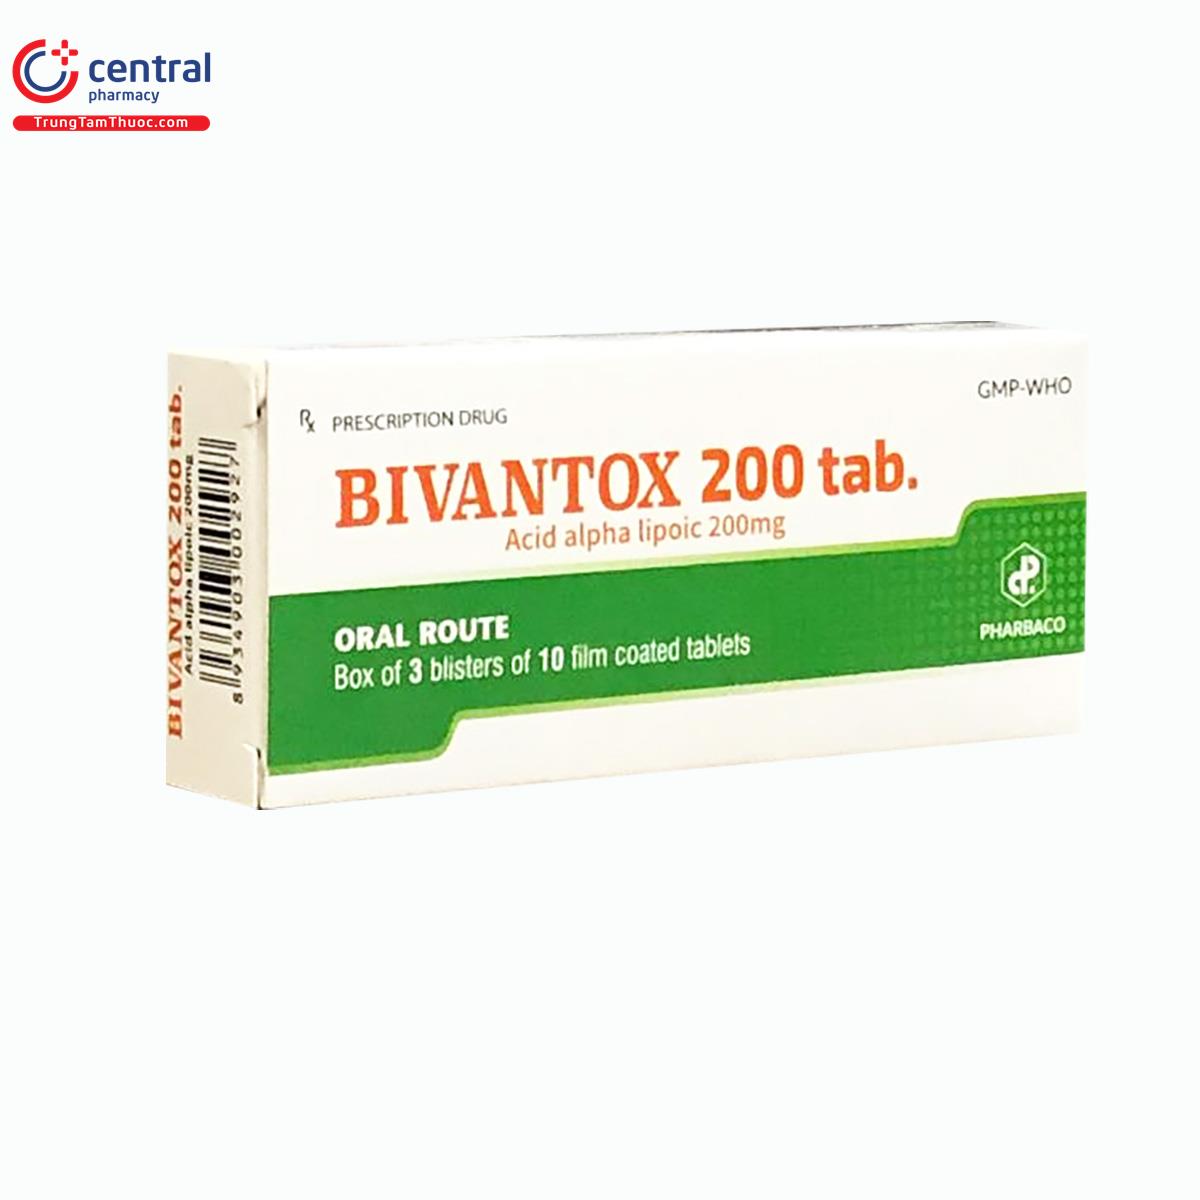 bivantox 200 tab 6 J3050